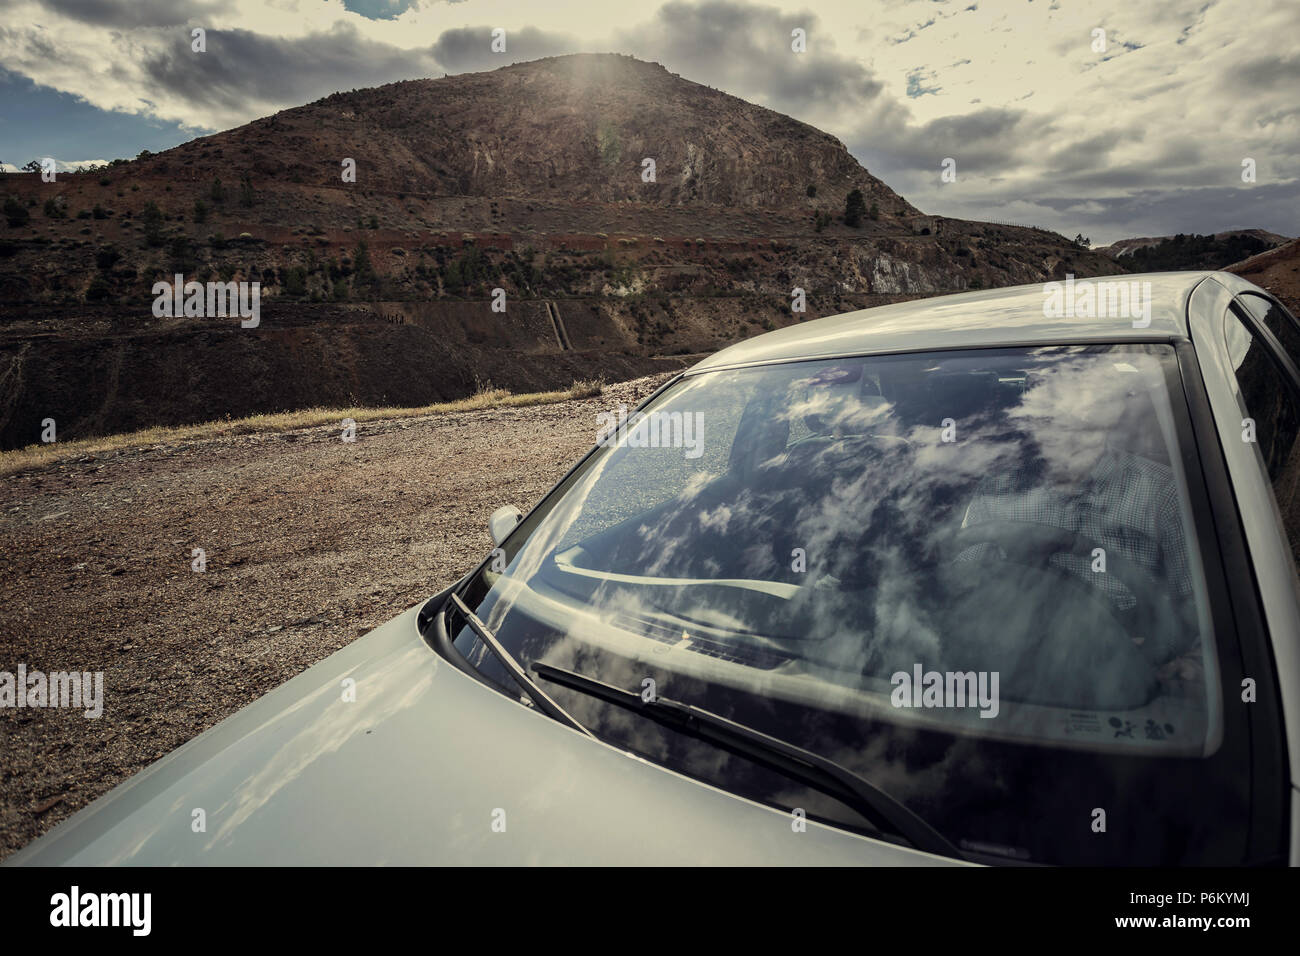 Las nubes se refleja en el cristal delantero del vehículo gris con un hombre interior y montaña y cielo con nubes antecedentes en la zaranda minas, España Foto de stock